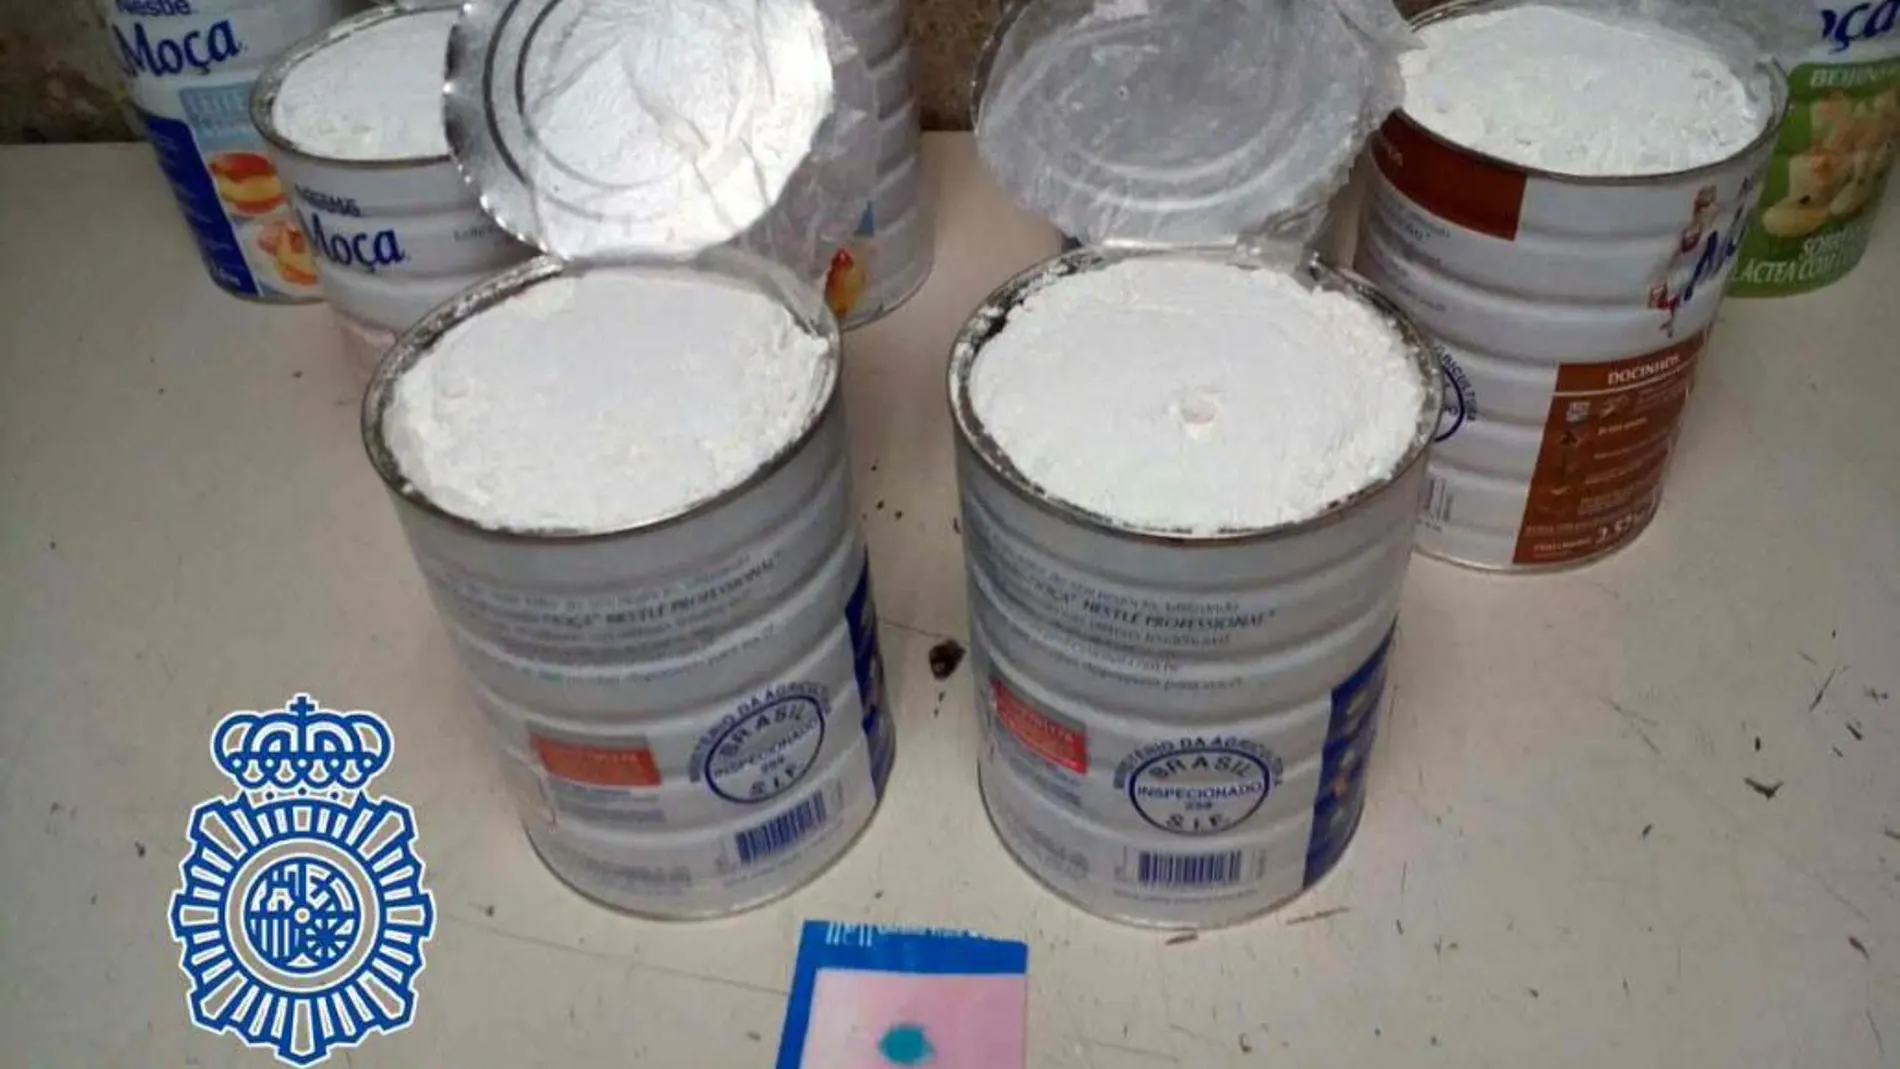 Detenida en Barajas una mujer que llevaba 15 kilos de cocaína en botes de leche condensada